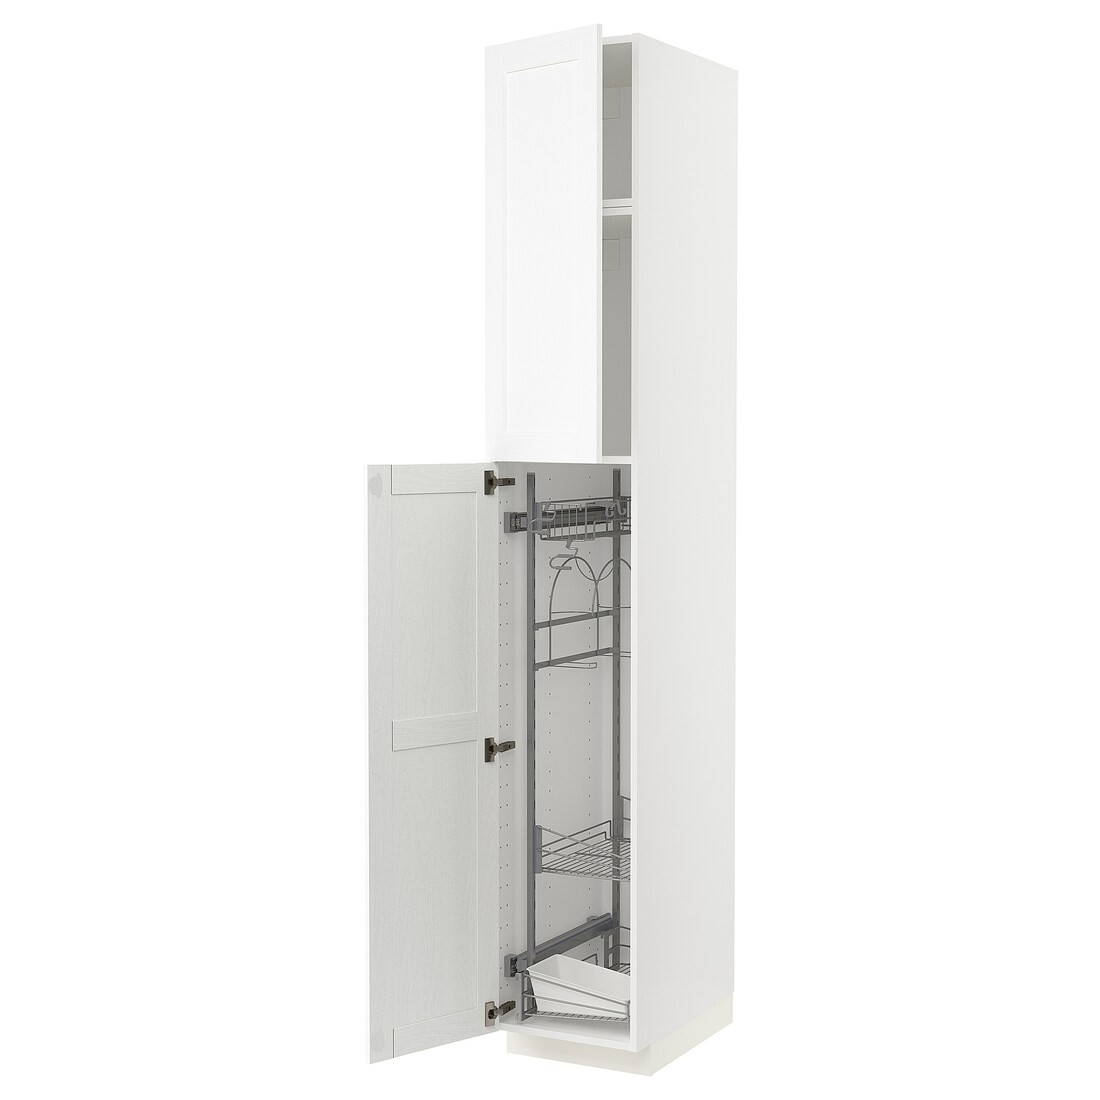 METOD МЕТОД Высокий шкаф с отделением для аксессуаров для уборки, белый Enköping / белый имитация дерева, 40x60x240 см